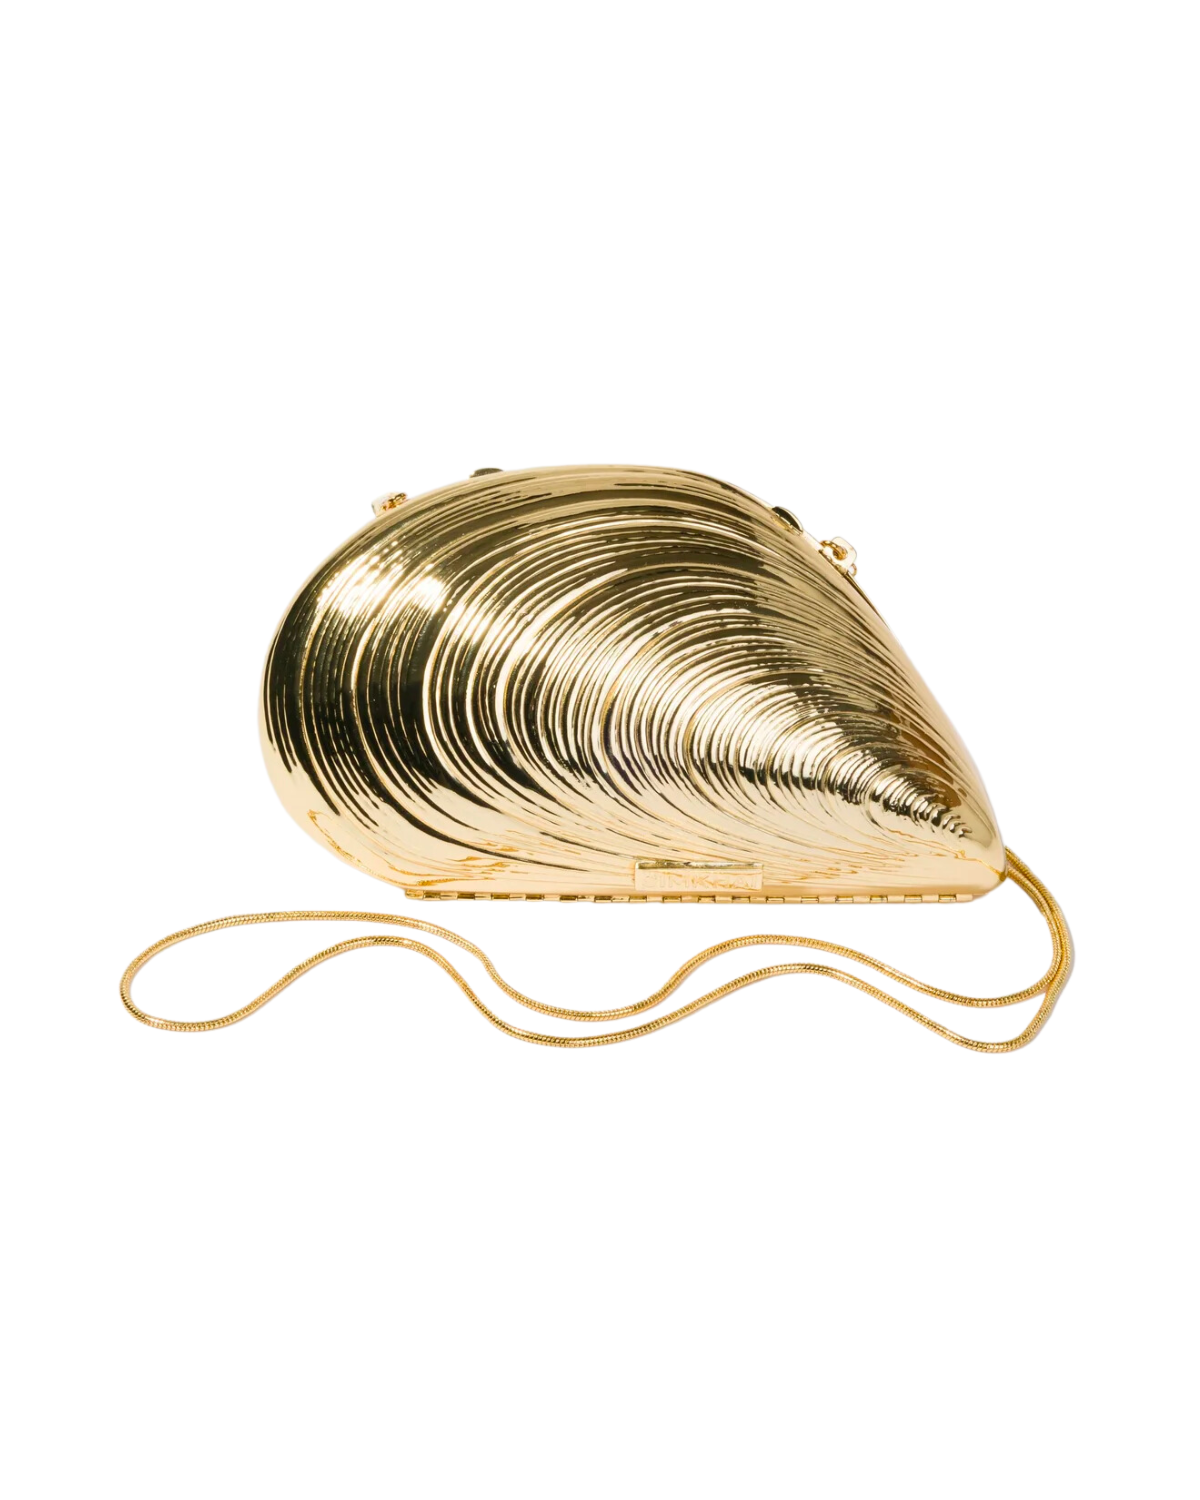 Bridget Metal Oyster Shell Clutch (Gold)